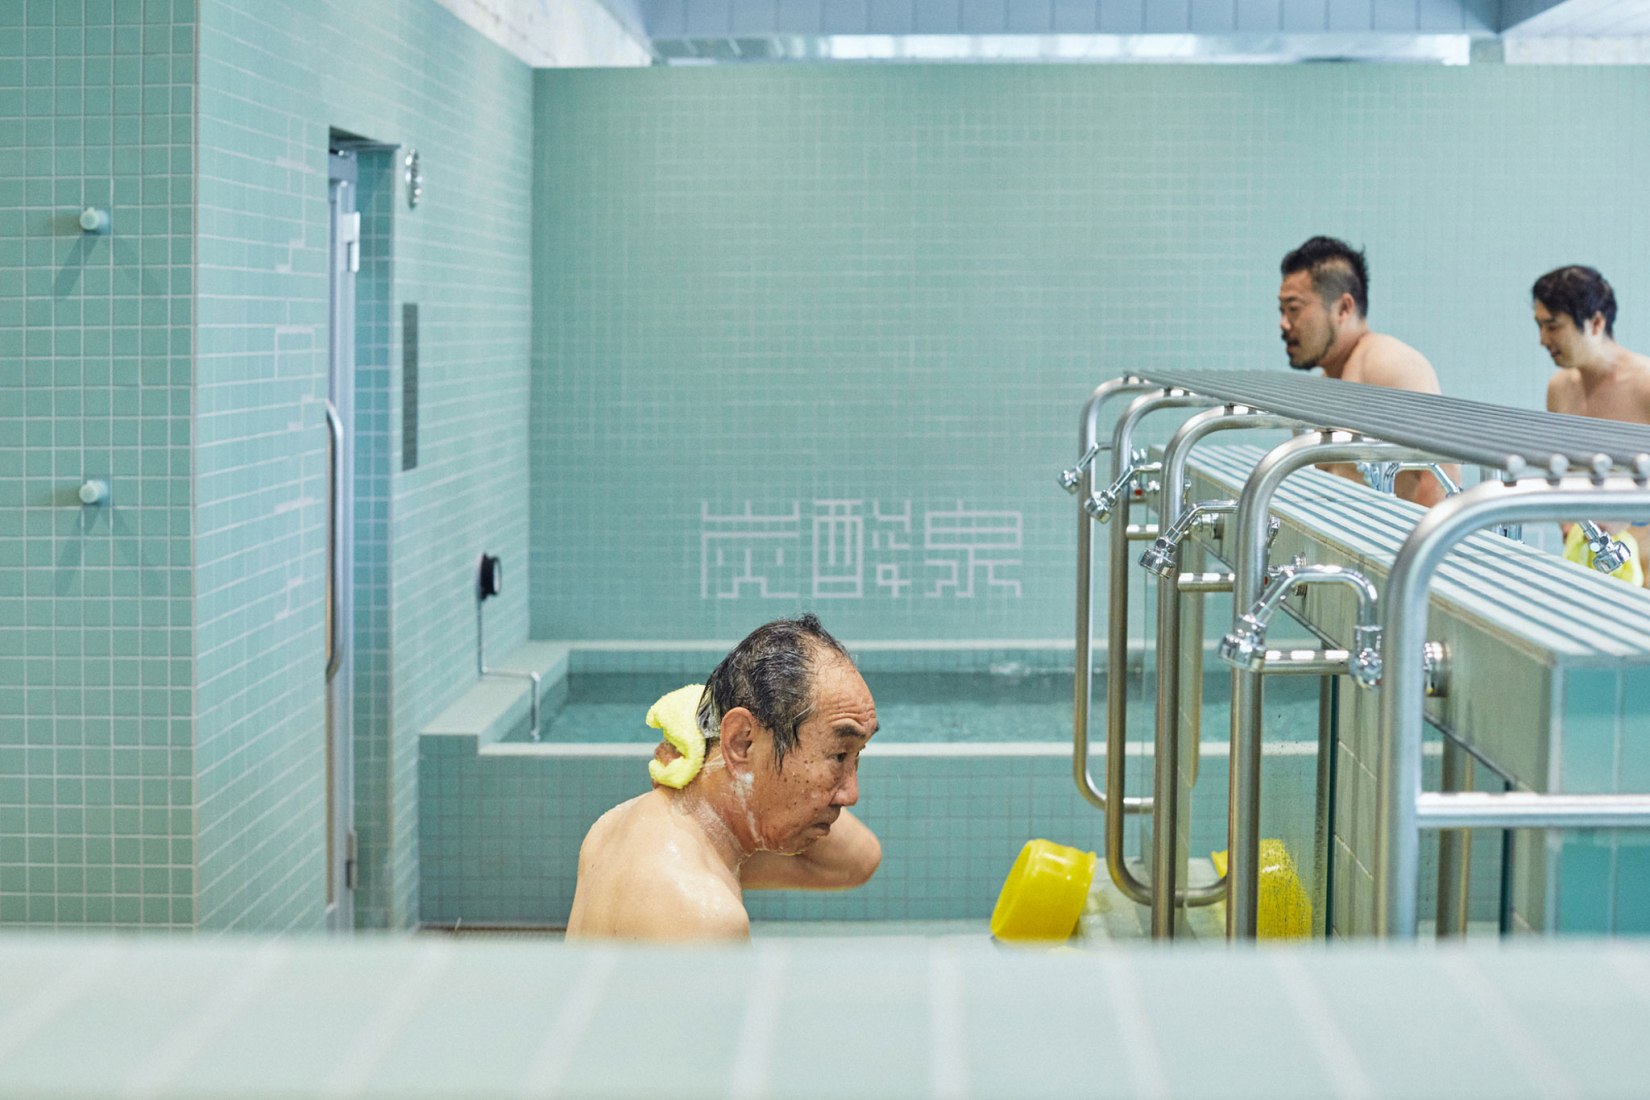 Komaeyu Public Bathhouse by Jo Nagasaka, Schemata Architects. Photograph by Ju Yeon Lee.